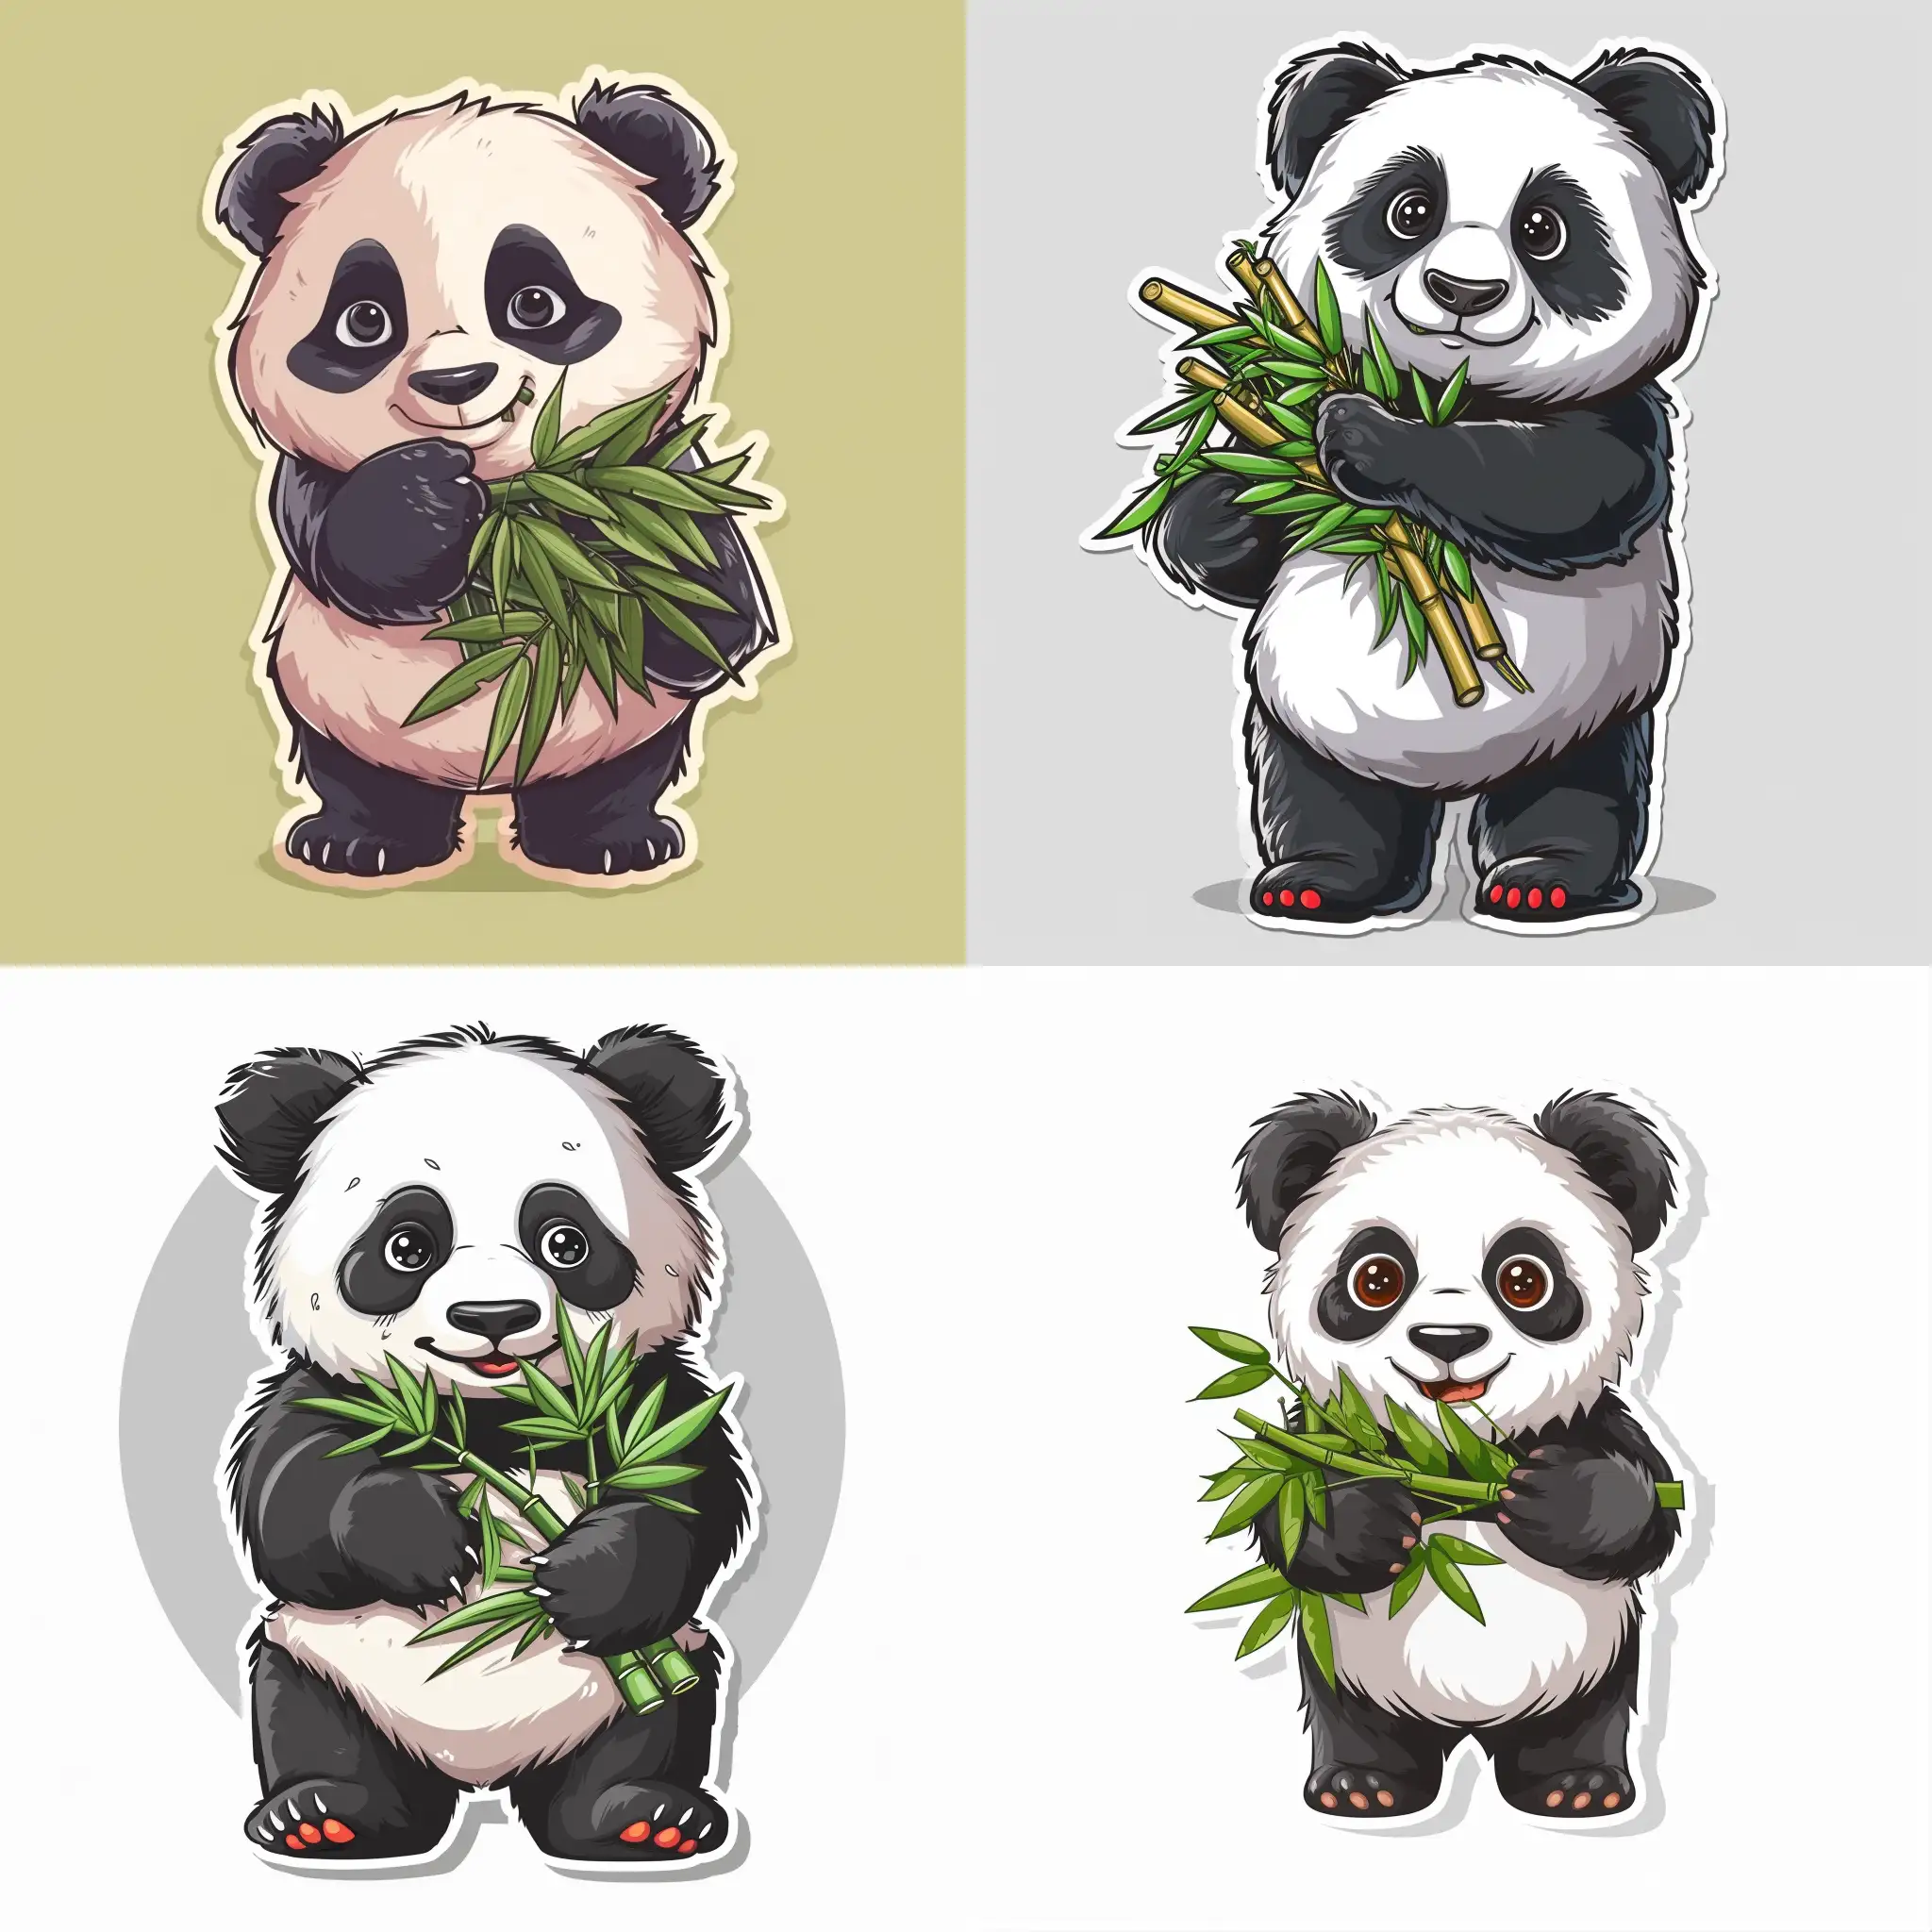 Adorable-Cartoon-Panda-Holding-an-Armful-of-Bamboo-Sticks